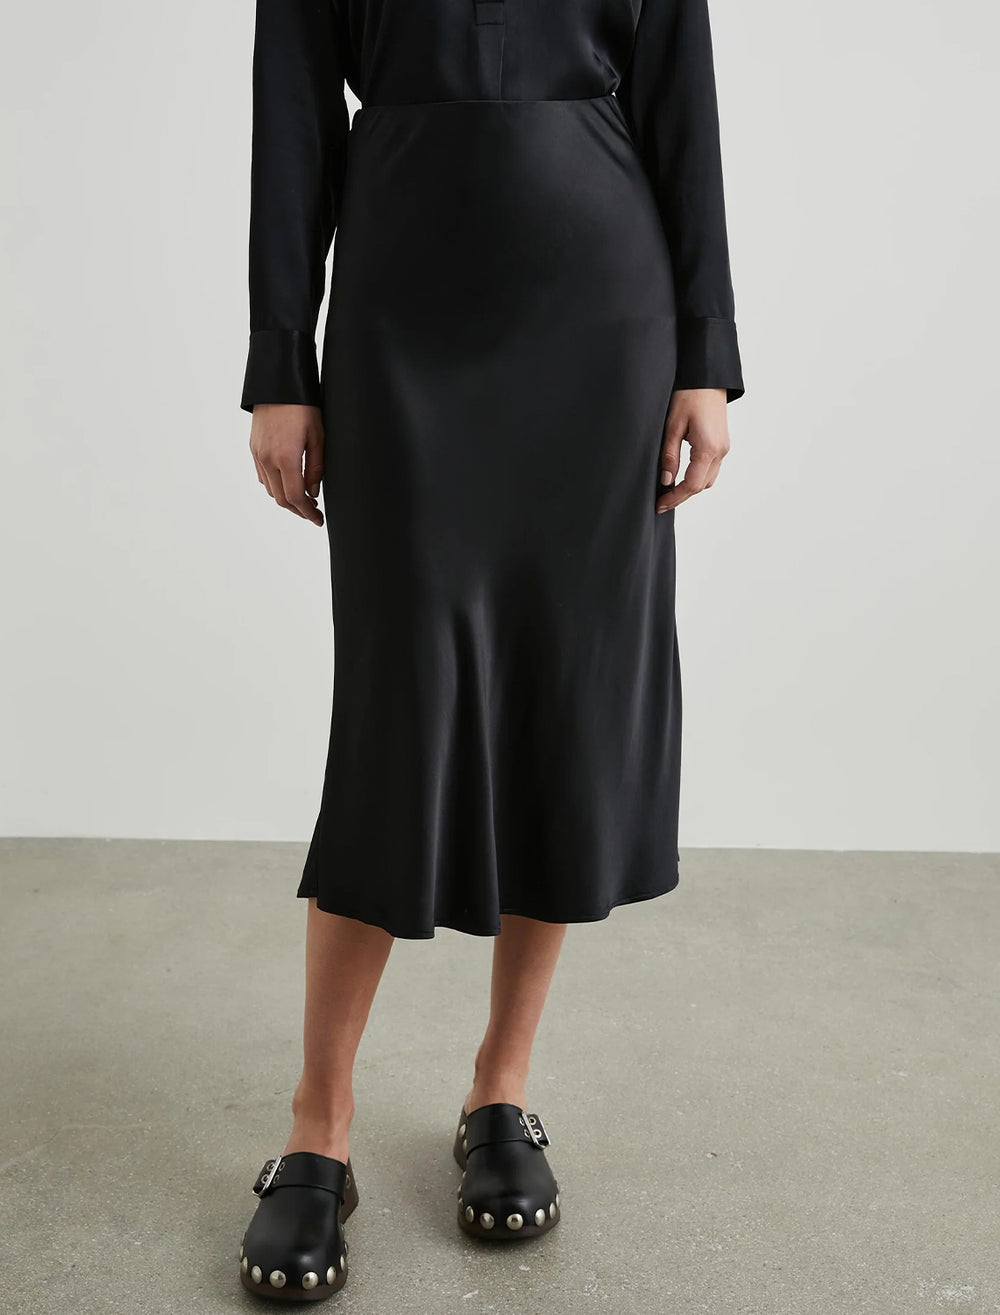 Model wearing Rails' berlin skirt in black.